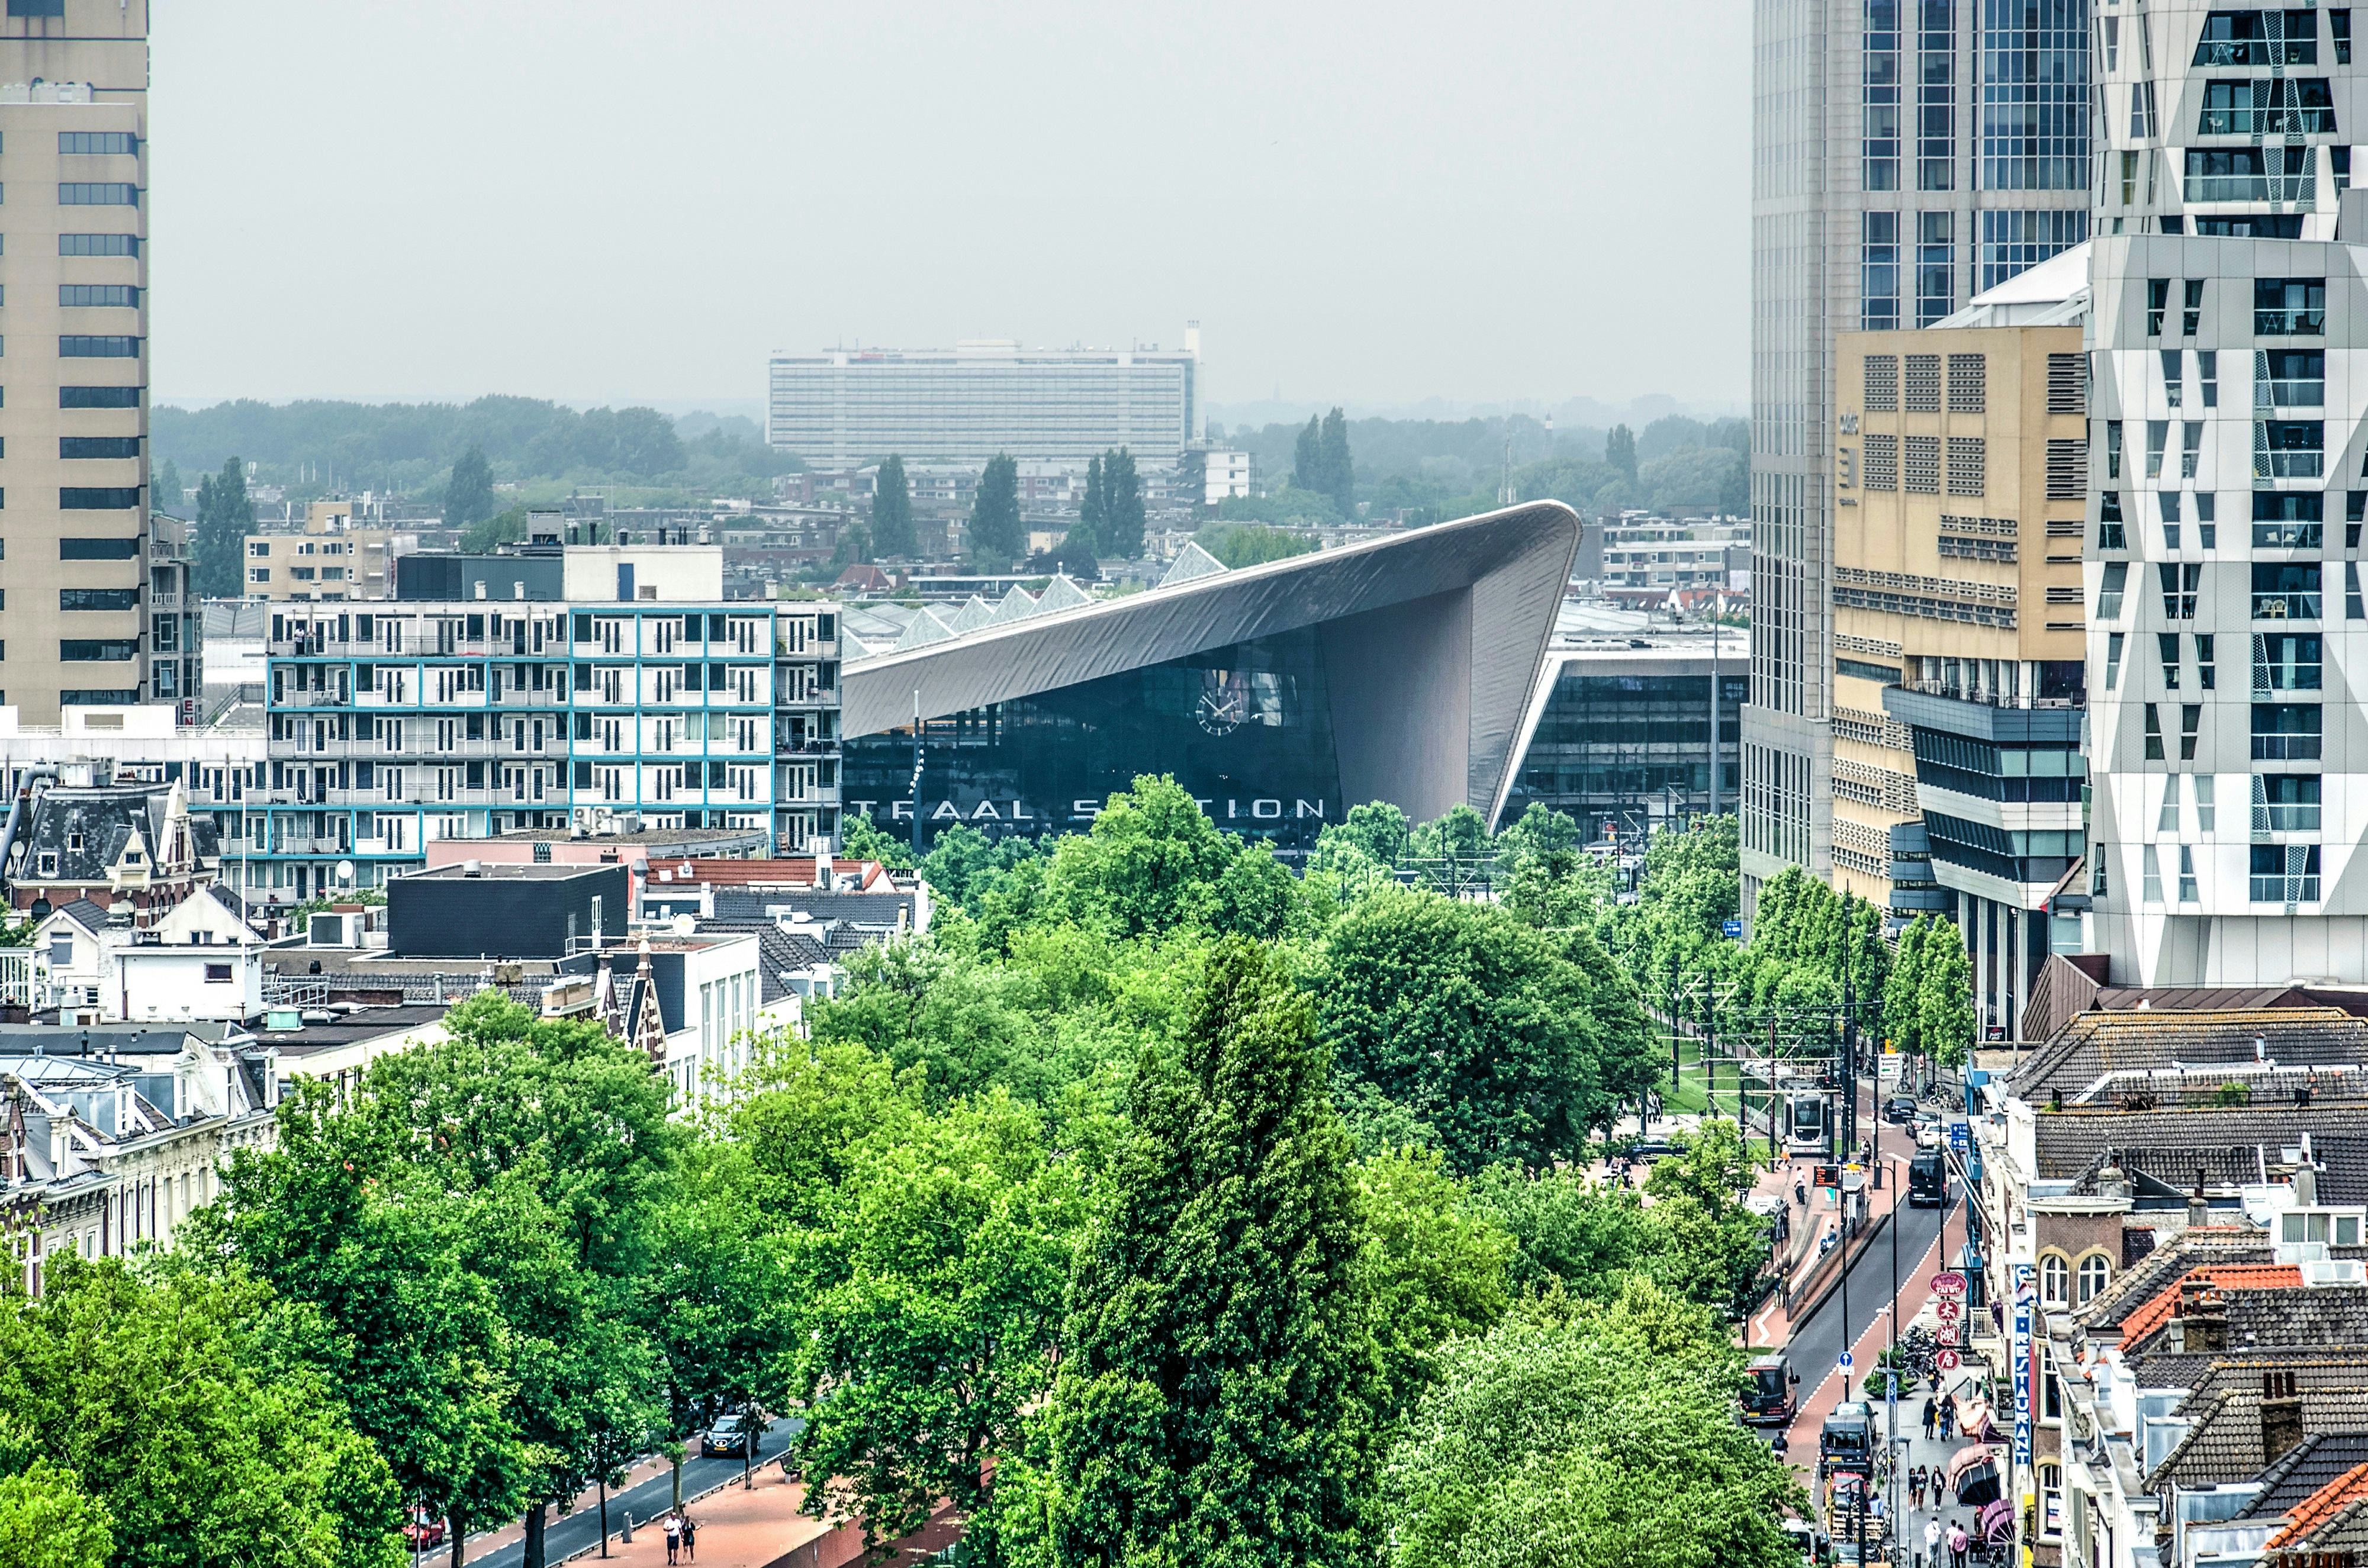 Rotterdam Centraal door Team CS. Beeld Shutterstock